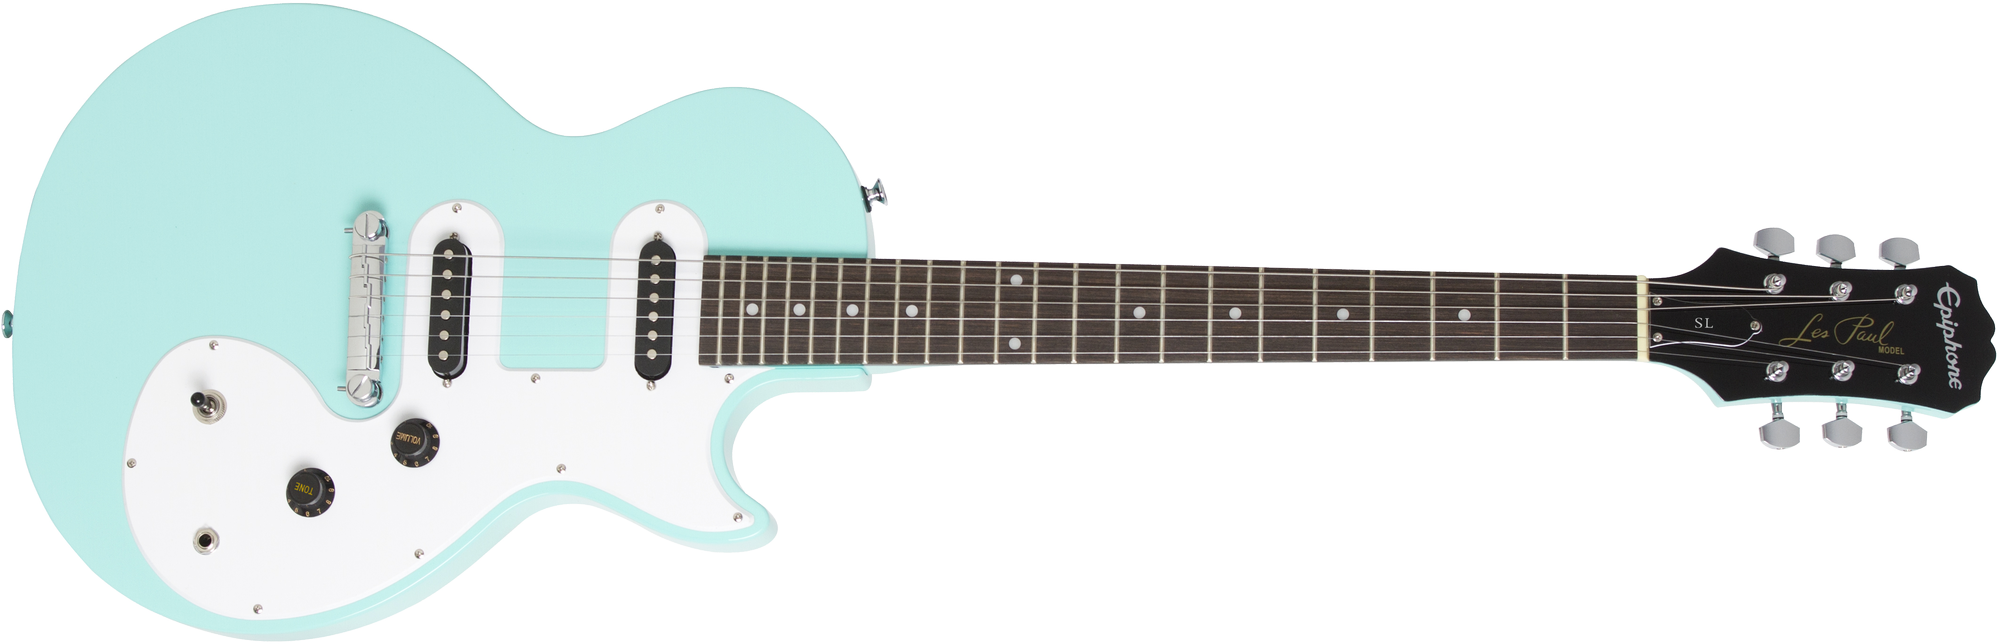 Billede af Epiphone Les Paul SL El-guitar (Turquoise)